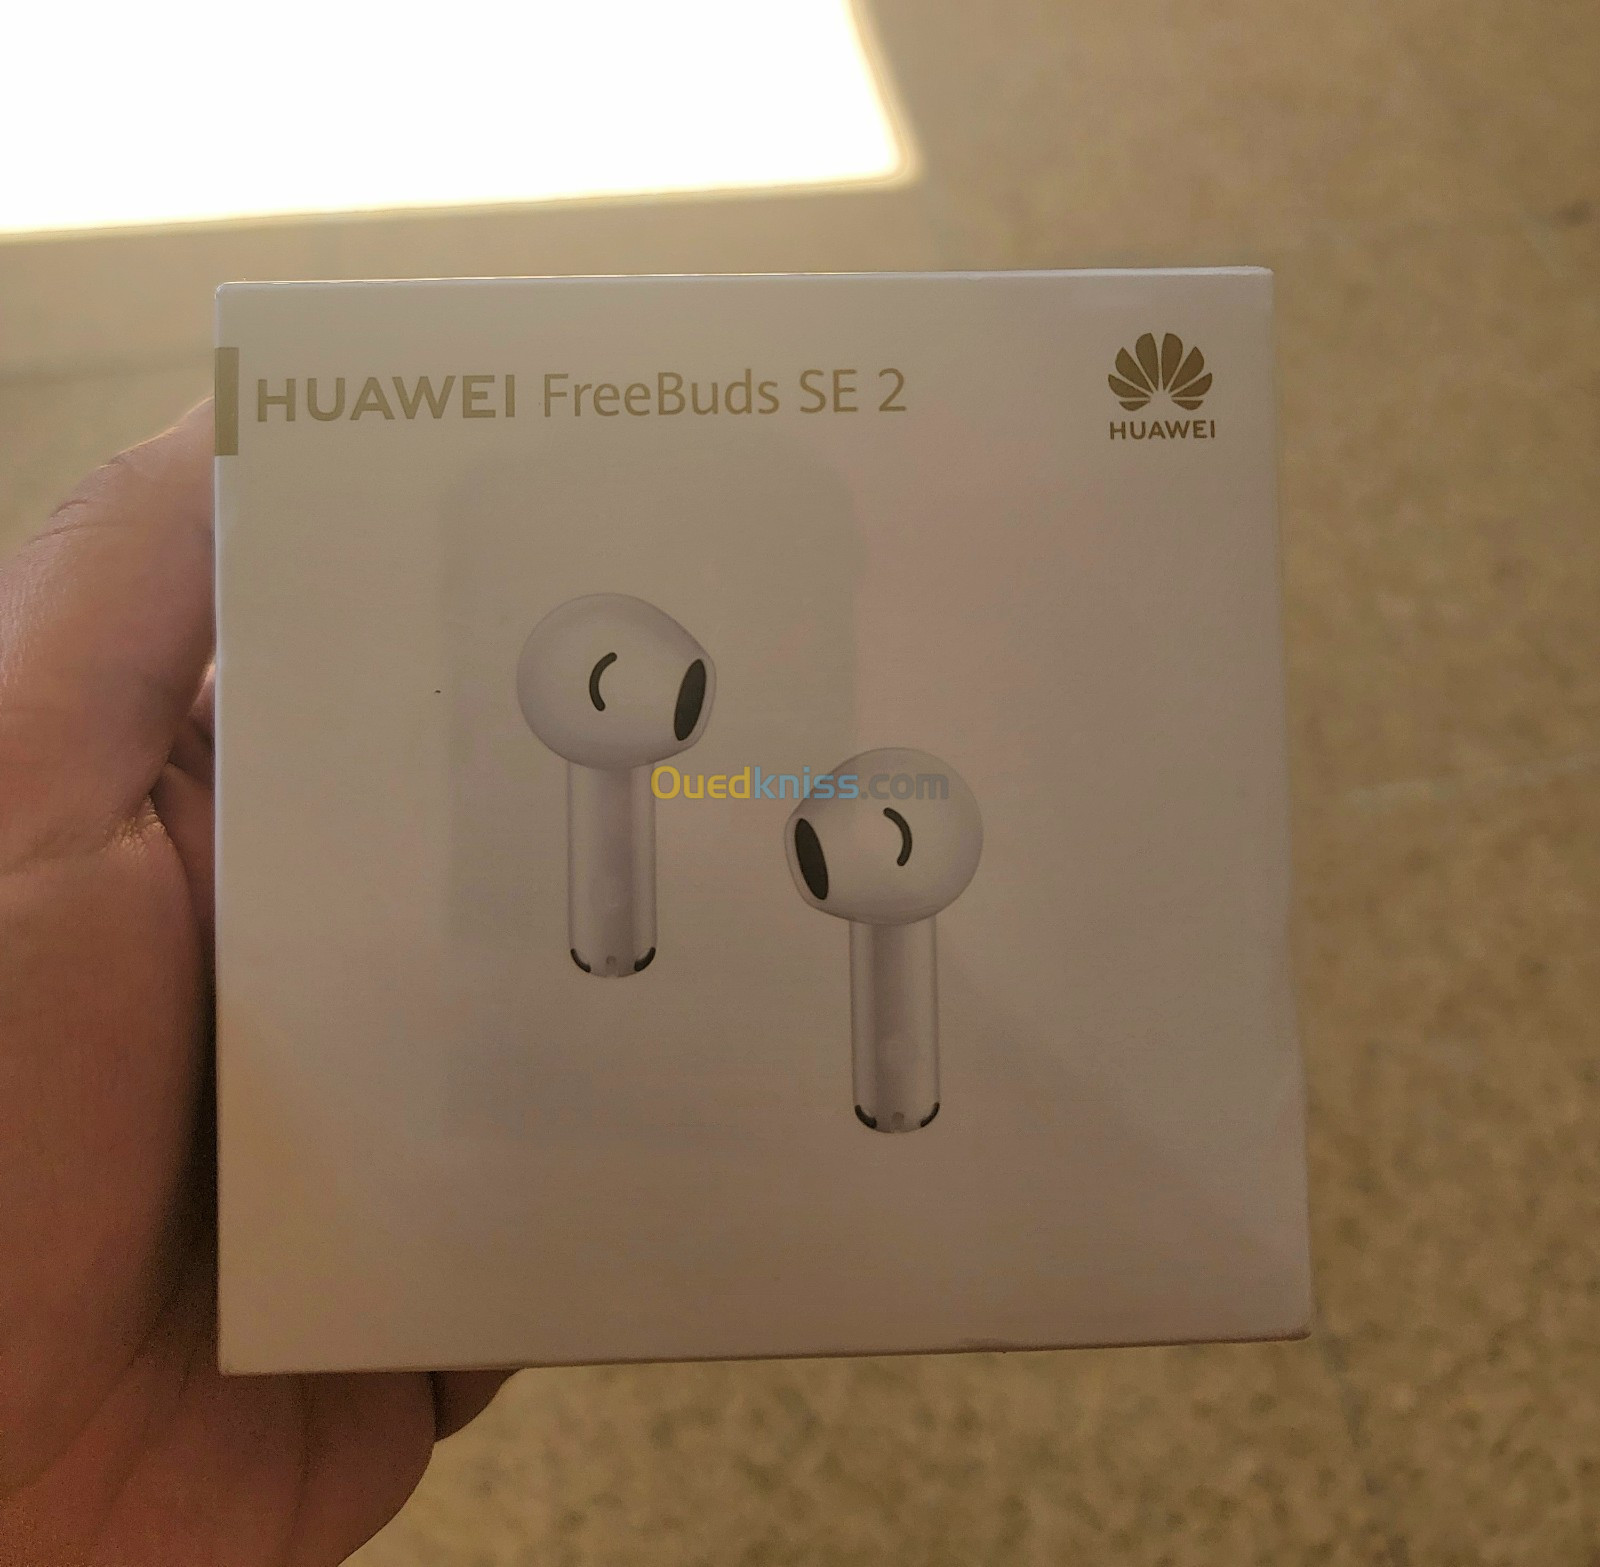 Huawei free buds se 2